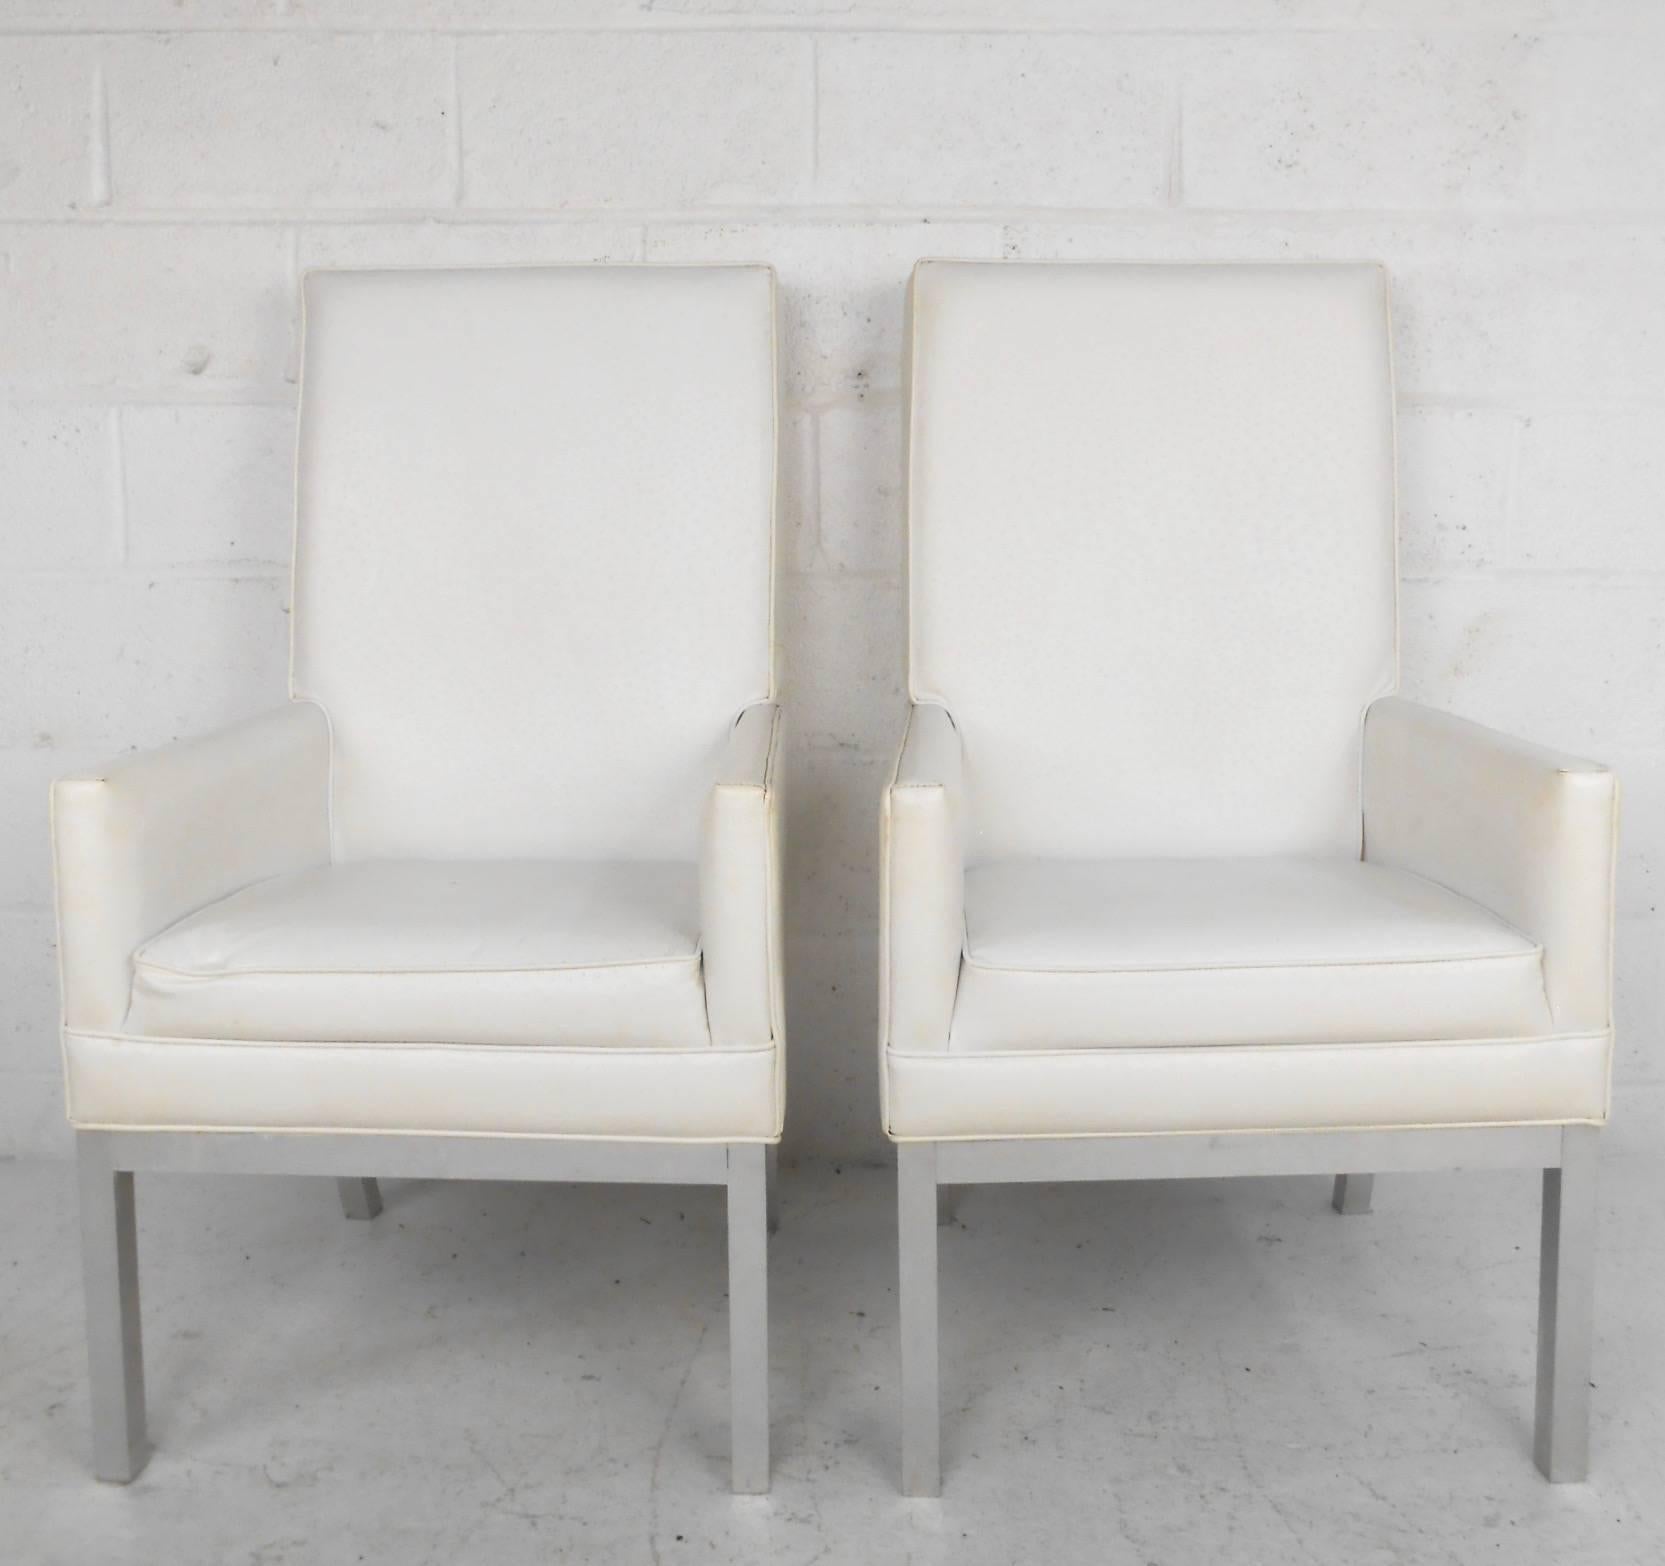 Dieses einzigartige Paar gepolsterter Sessel mit hoher Rückenlehne hat einen Rahmen aus gebürstetem Aluminium und einen gepolsterten Vinylbezug. Das elegante Paar bietet bequeme Proportionen und eine attraktive, moderne Form in jeder Umgebung. Bitte